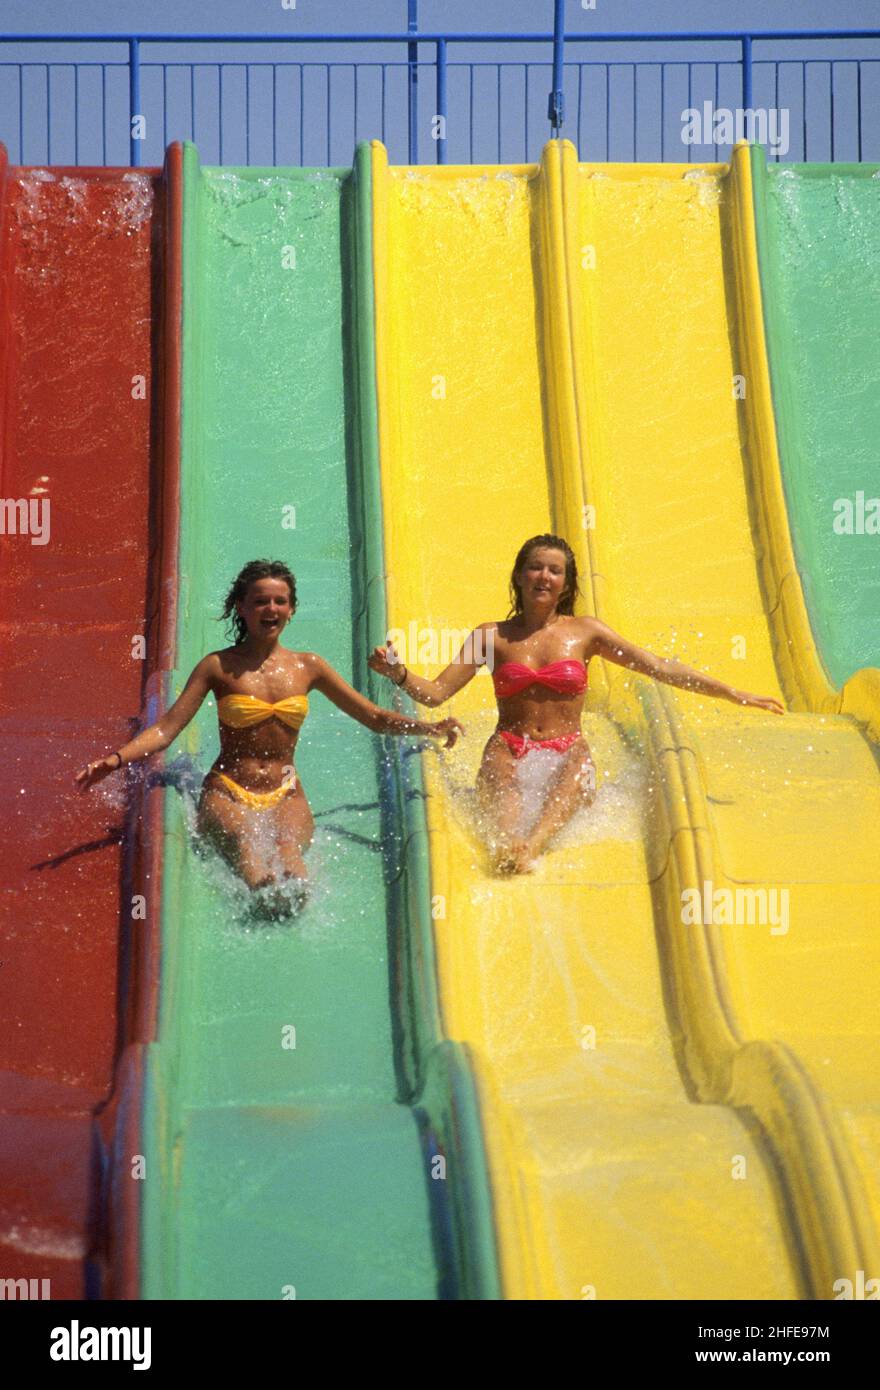 2 junge Frauen slidng auf farbigen Rodel frohe Feiertage lustigen Look Stockfoto